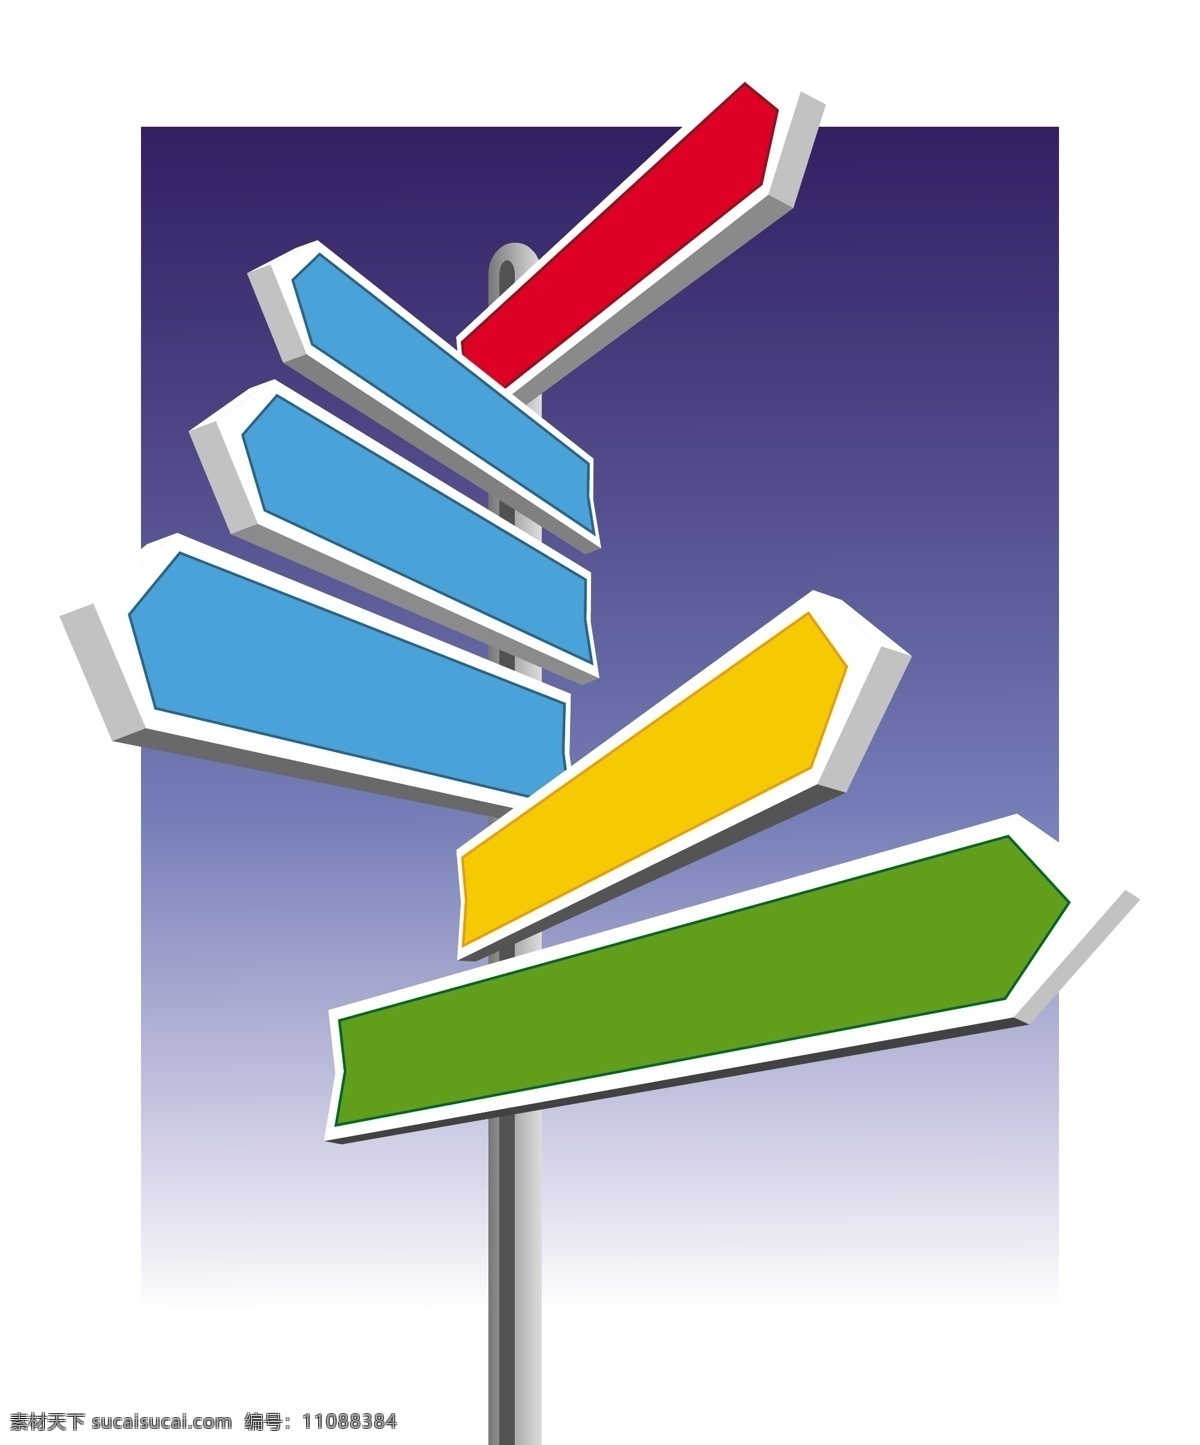 矢量 公路 标志 导航 方向标 告示板 路标 路牌 矢量素材 布告板 矢量图 其他矢量图